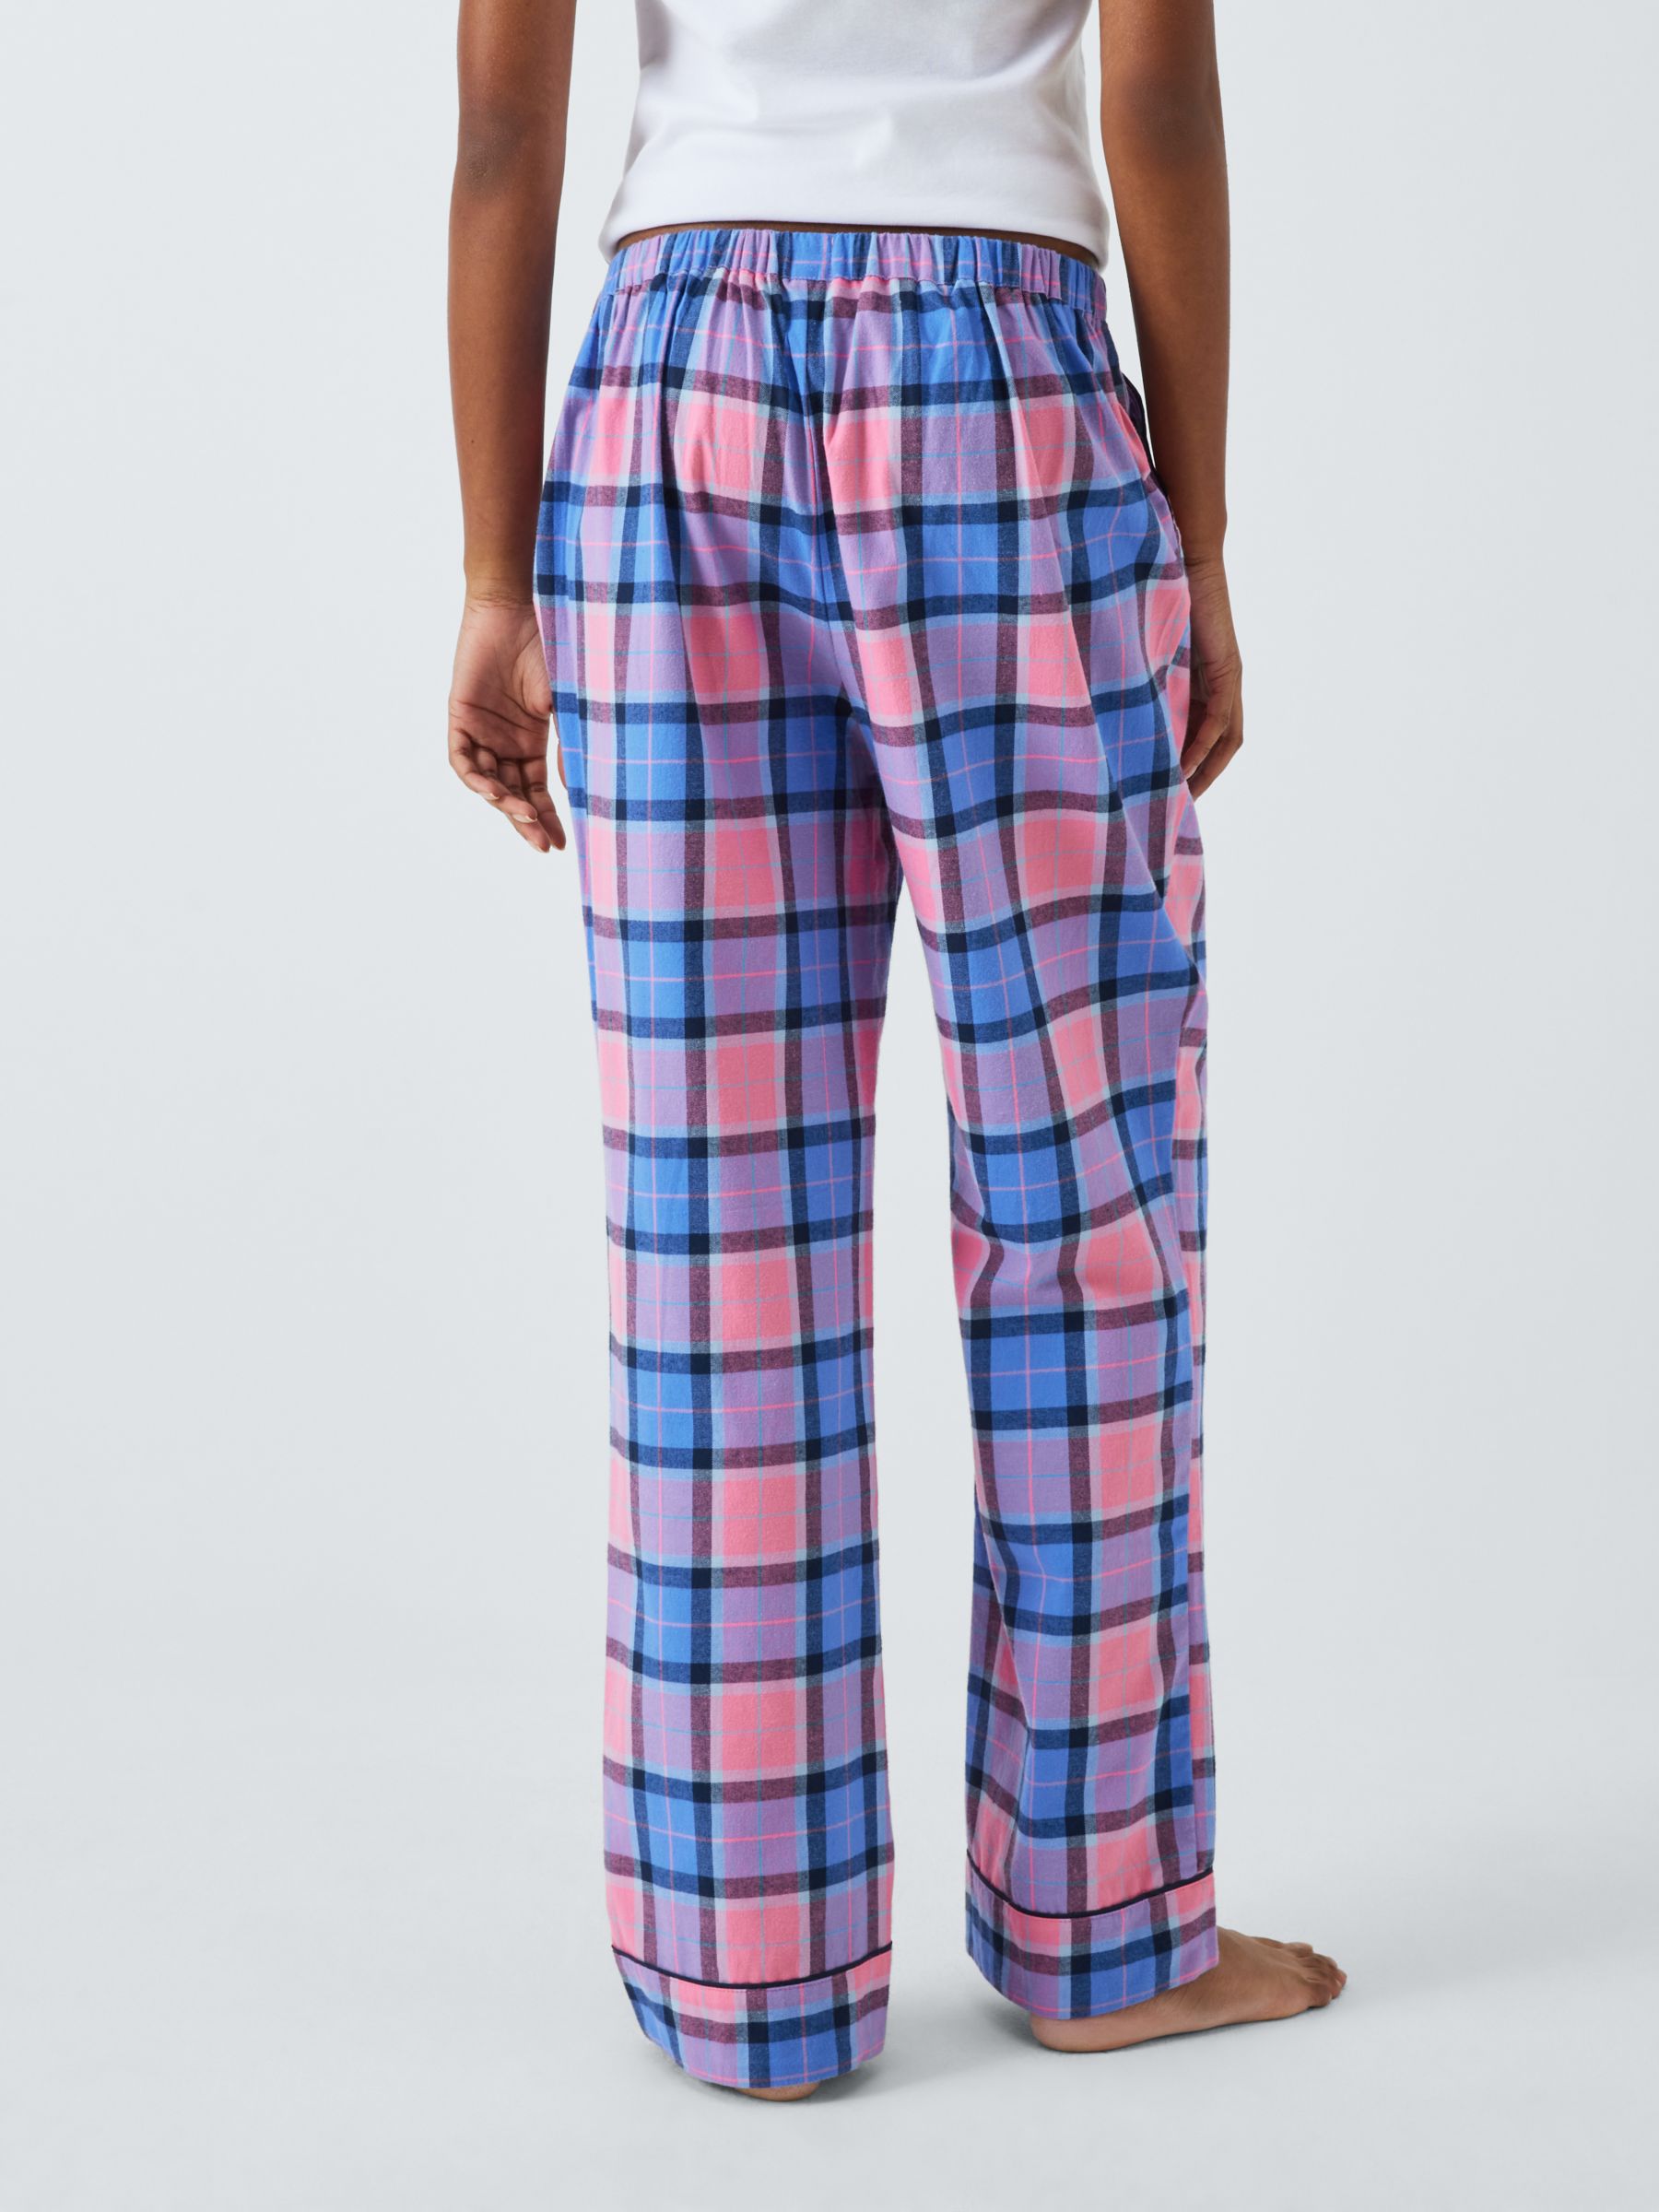 Plaid Pyjama Pants - Light blue plaid